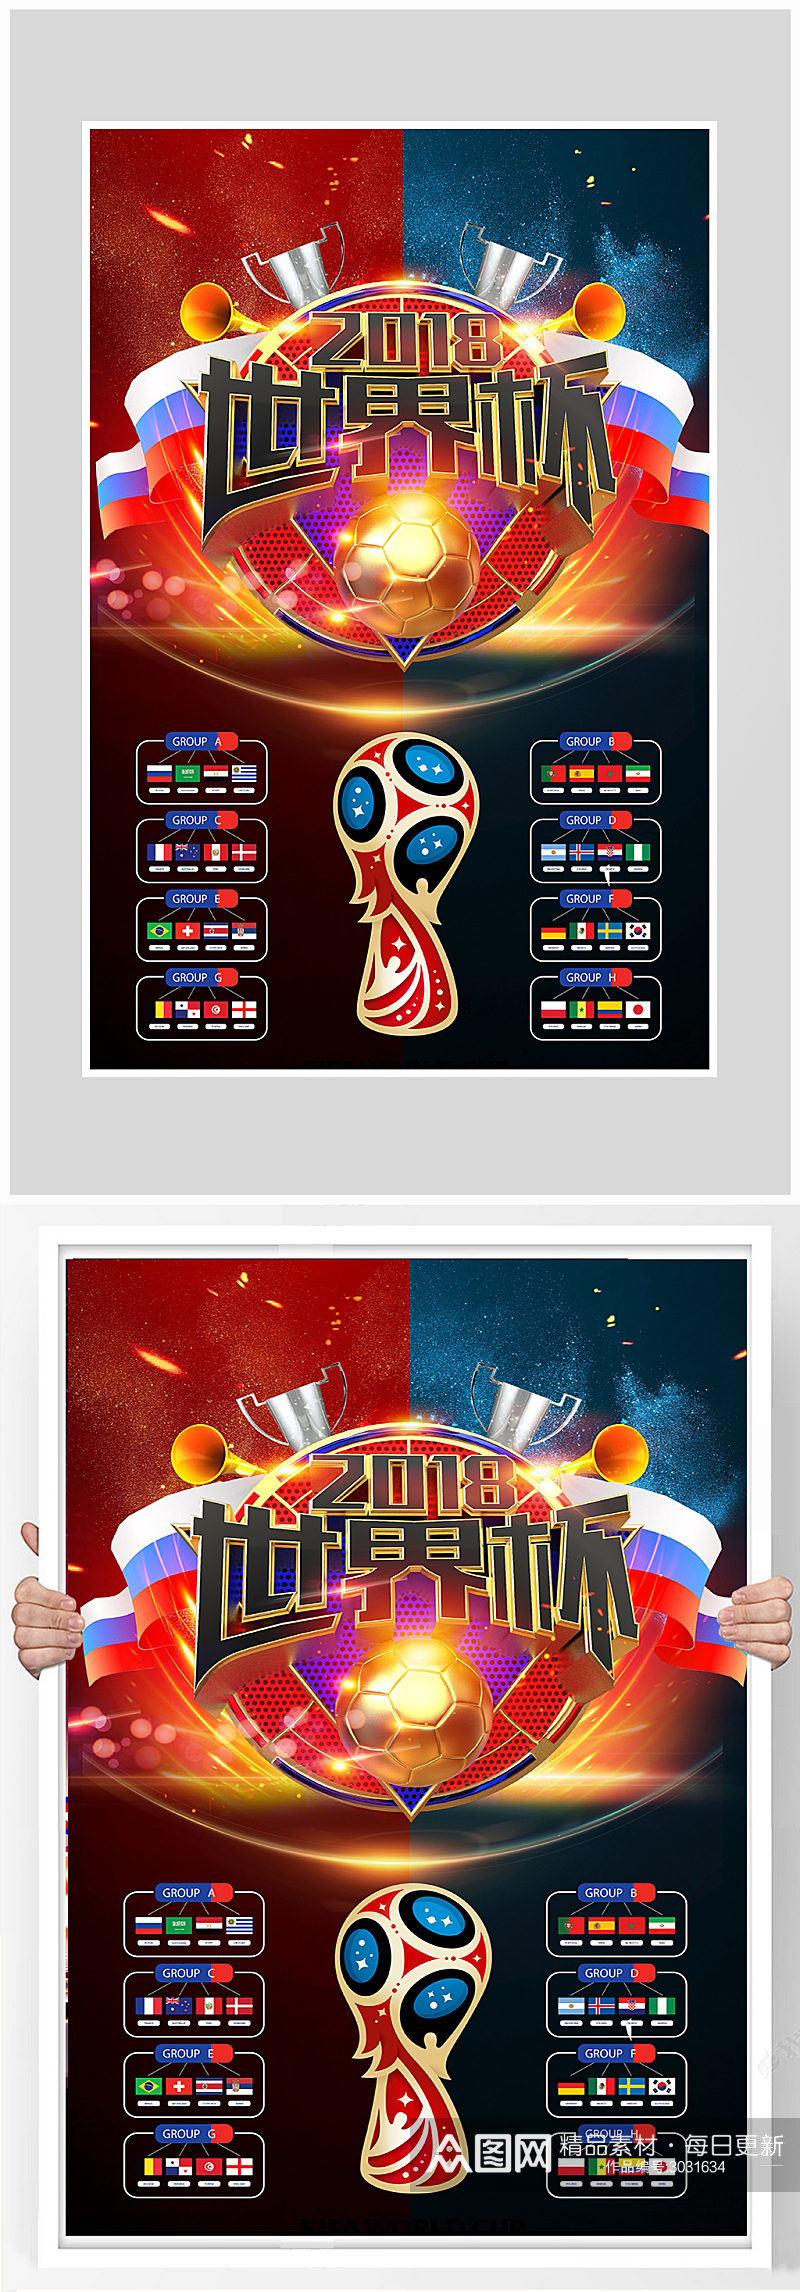 世界杯足球比赛海报设计素材